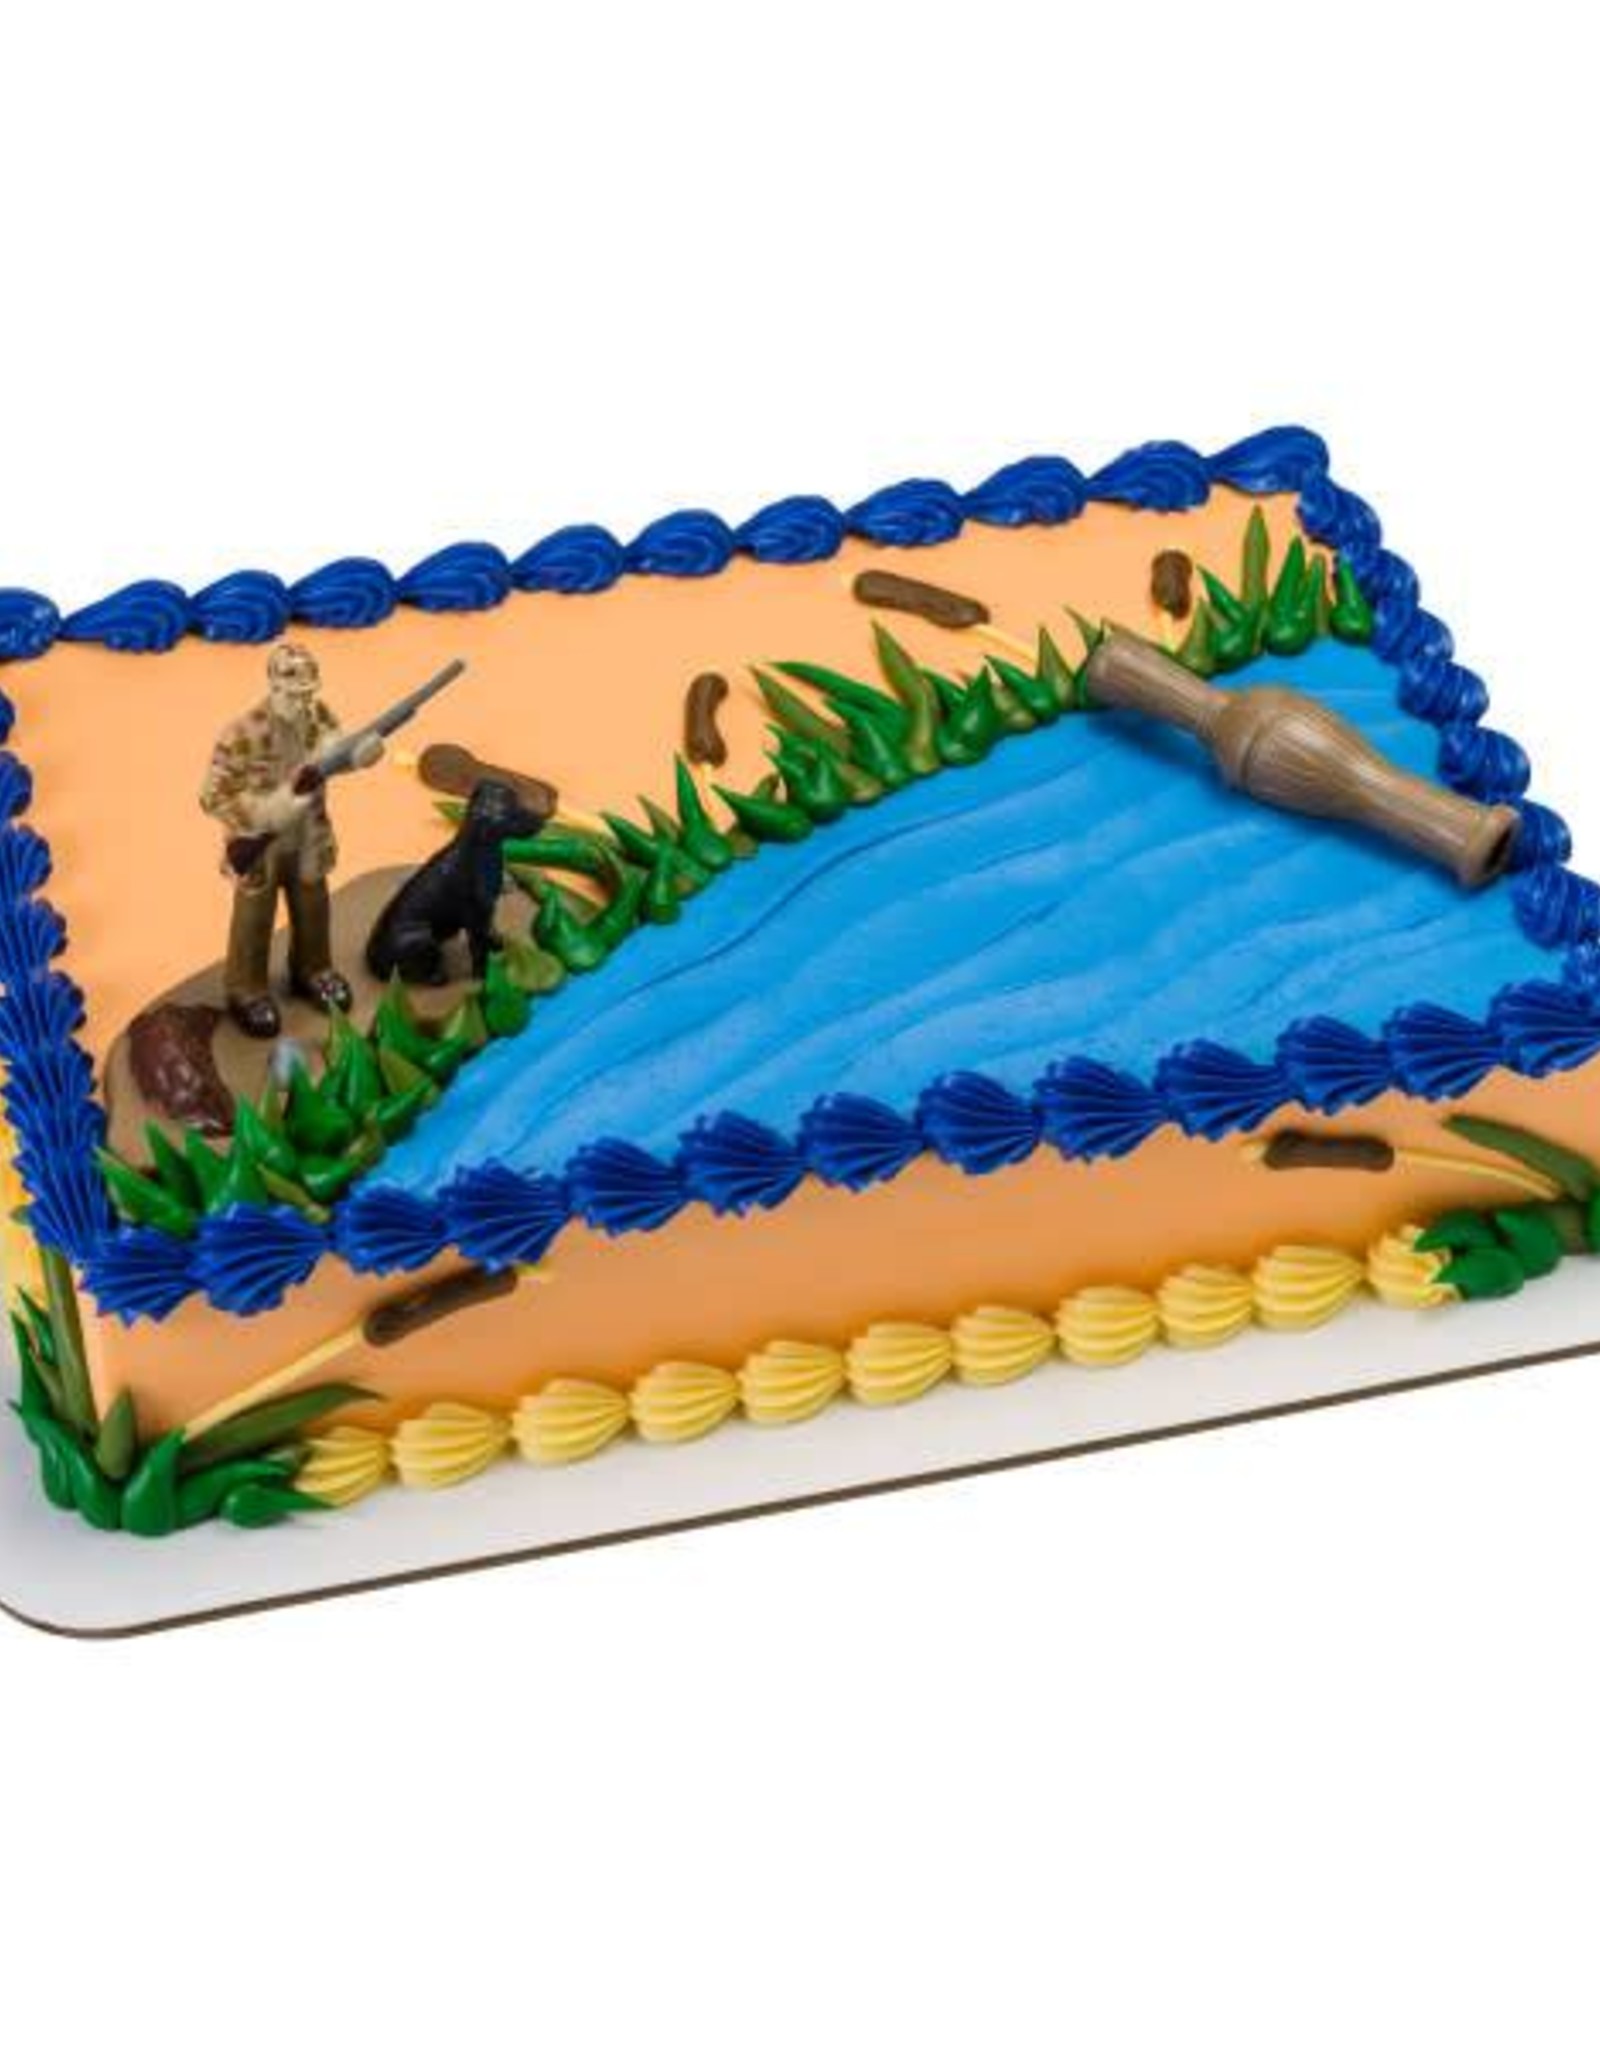 Duck Hunting Scene cake topper | Fondant cake topper for a 1… | Flickr